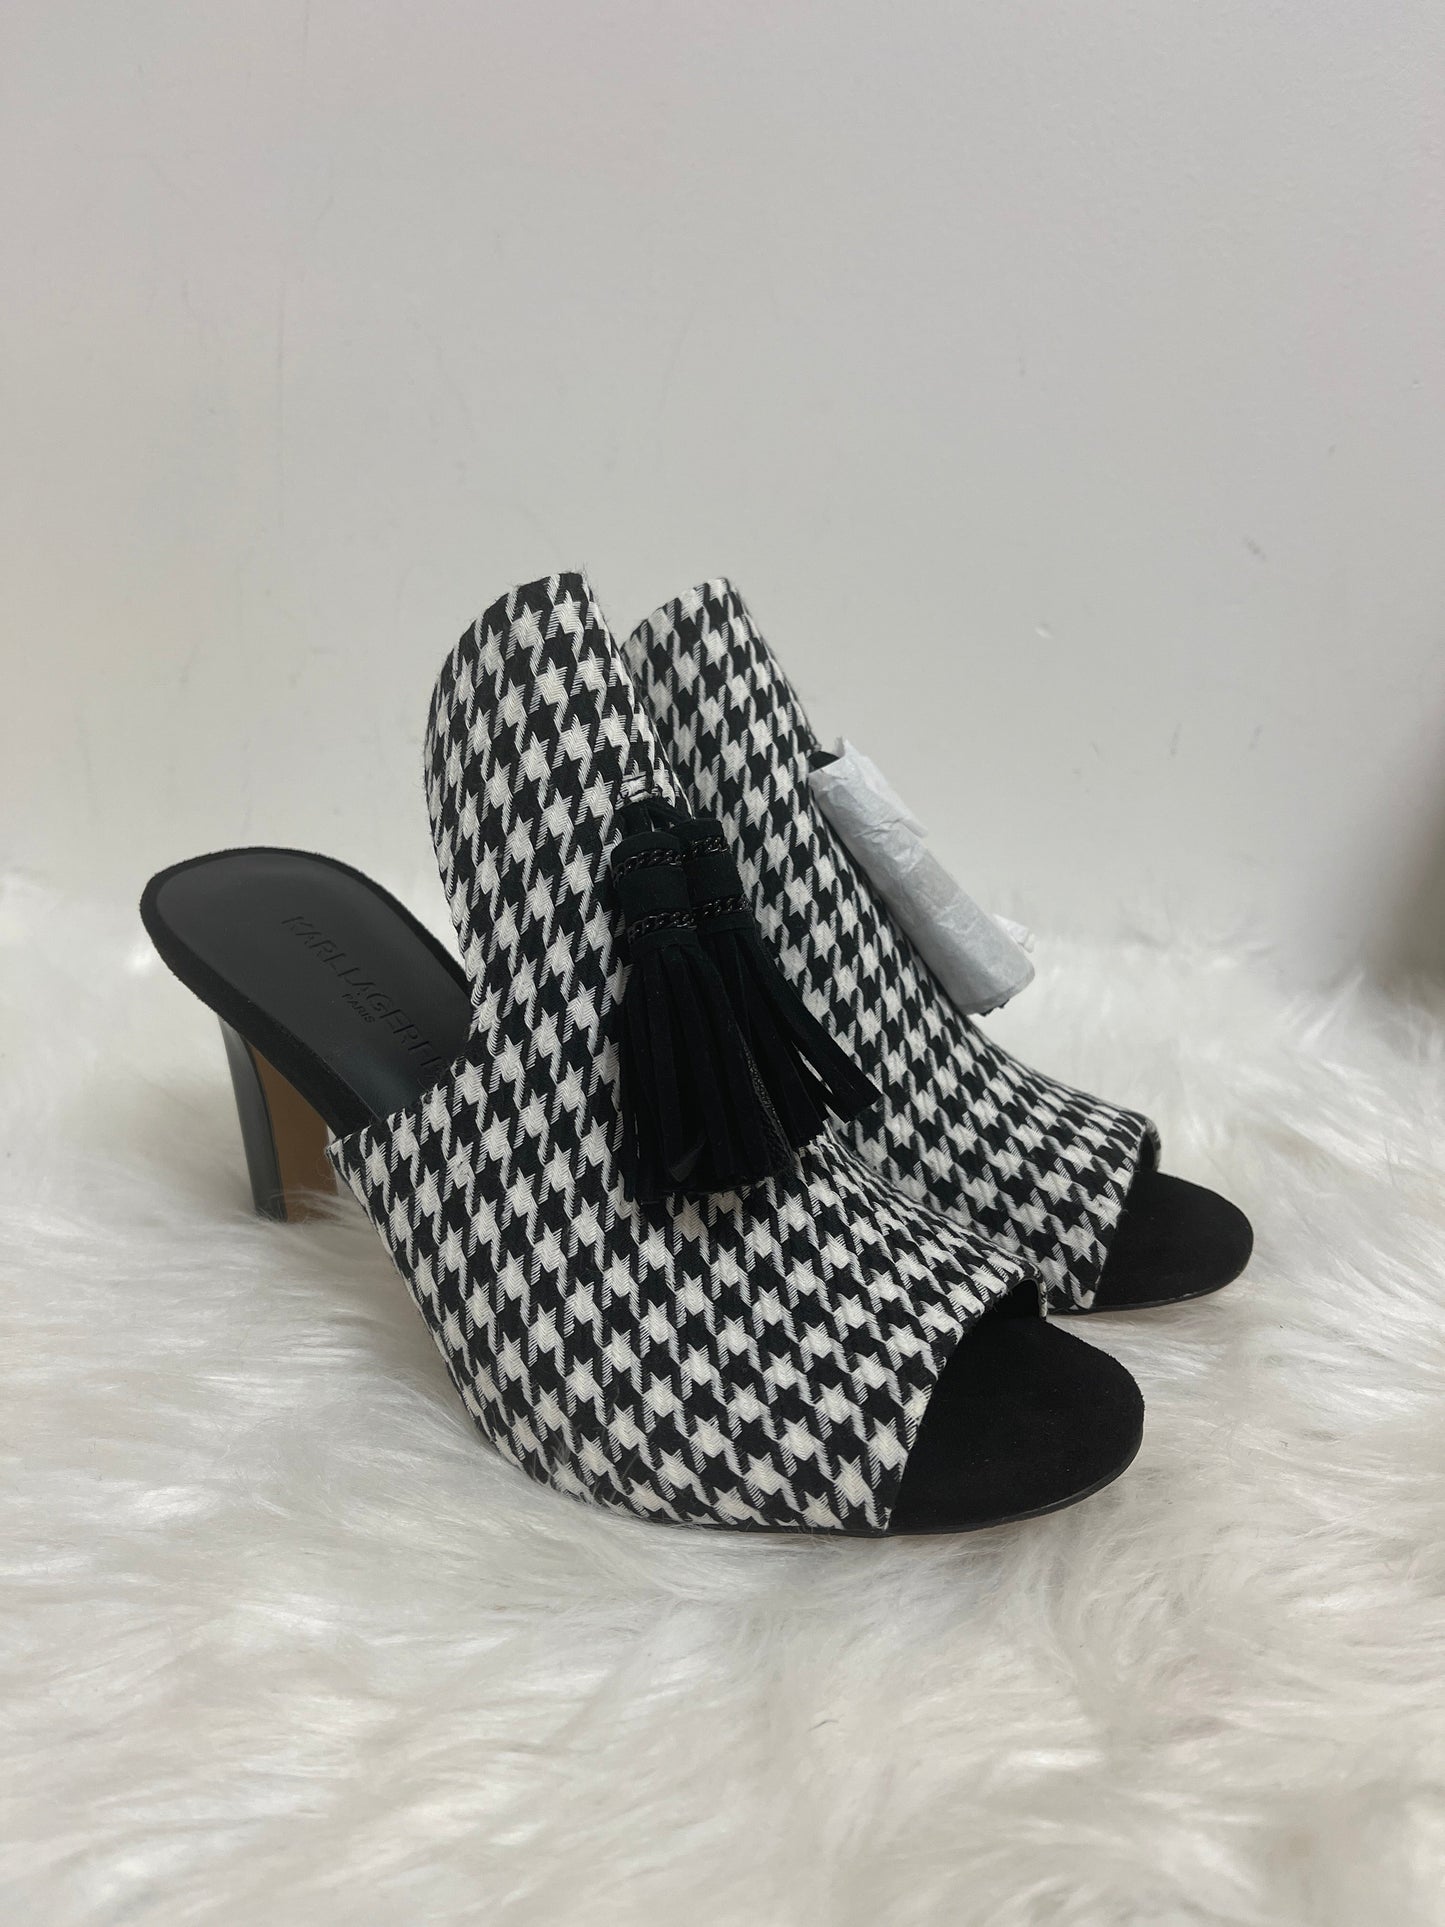 Black & White Shoes Designer Karl Lagerfeld, Size 6.5